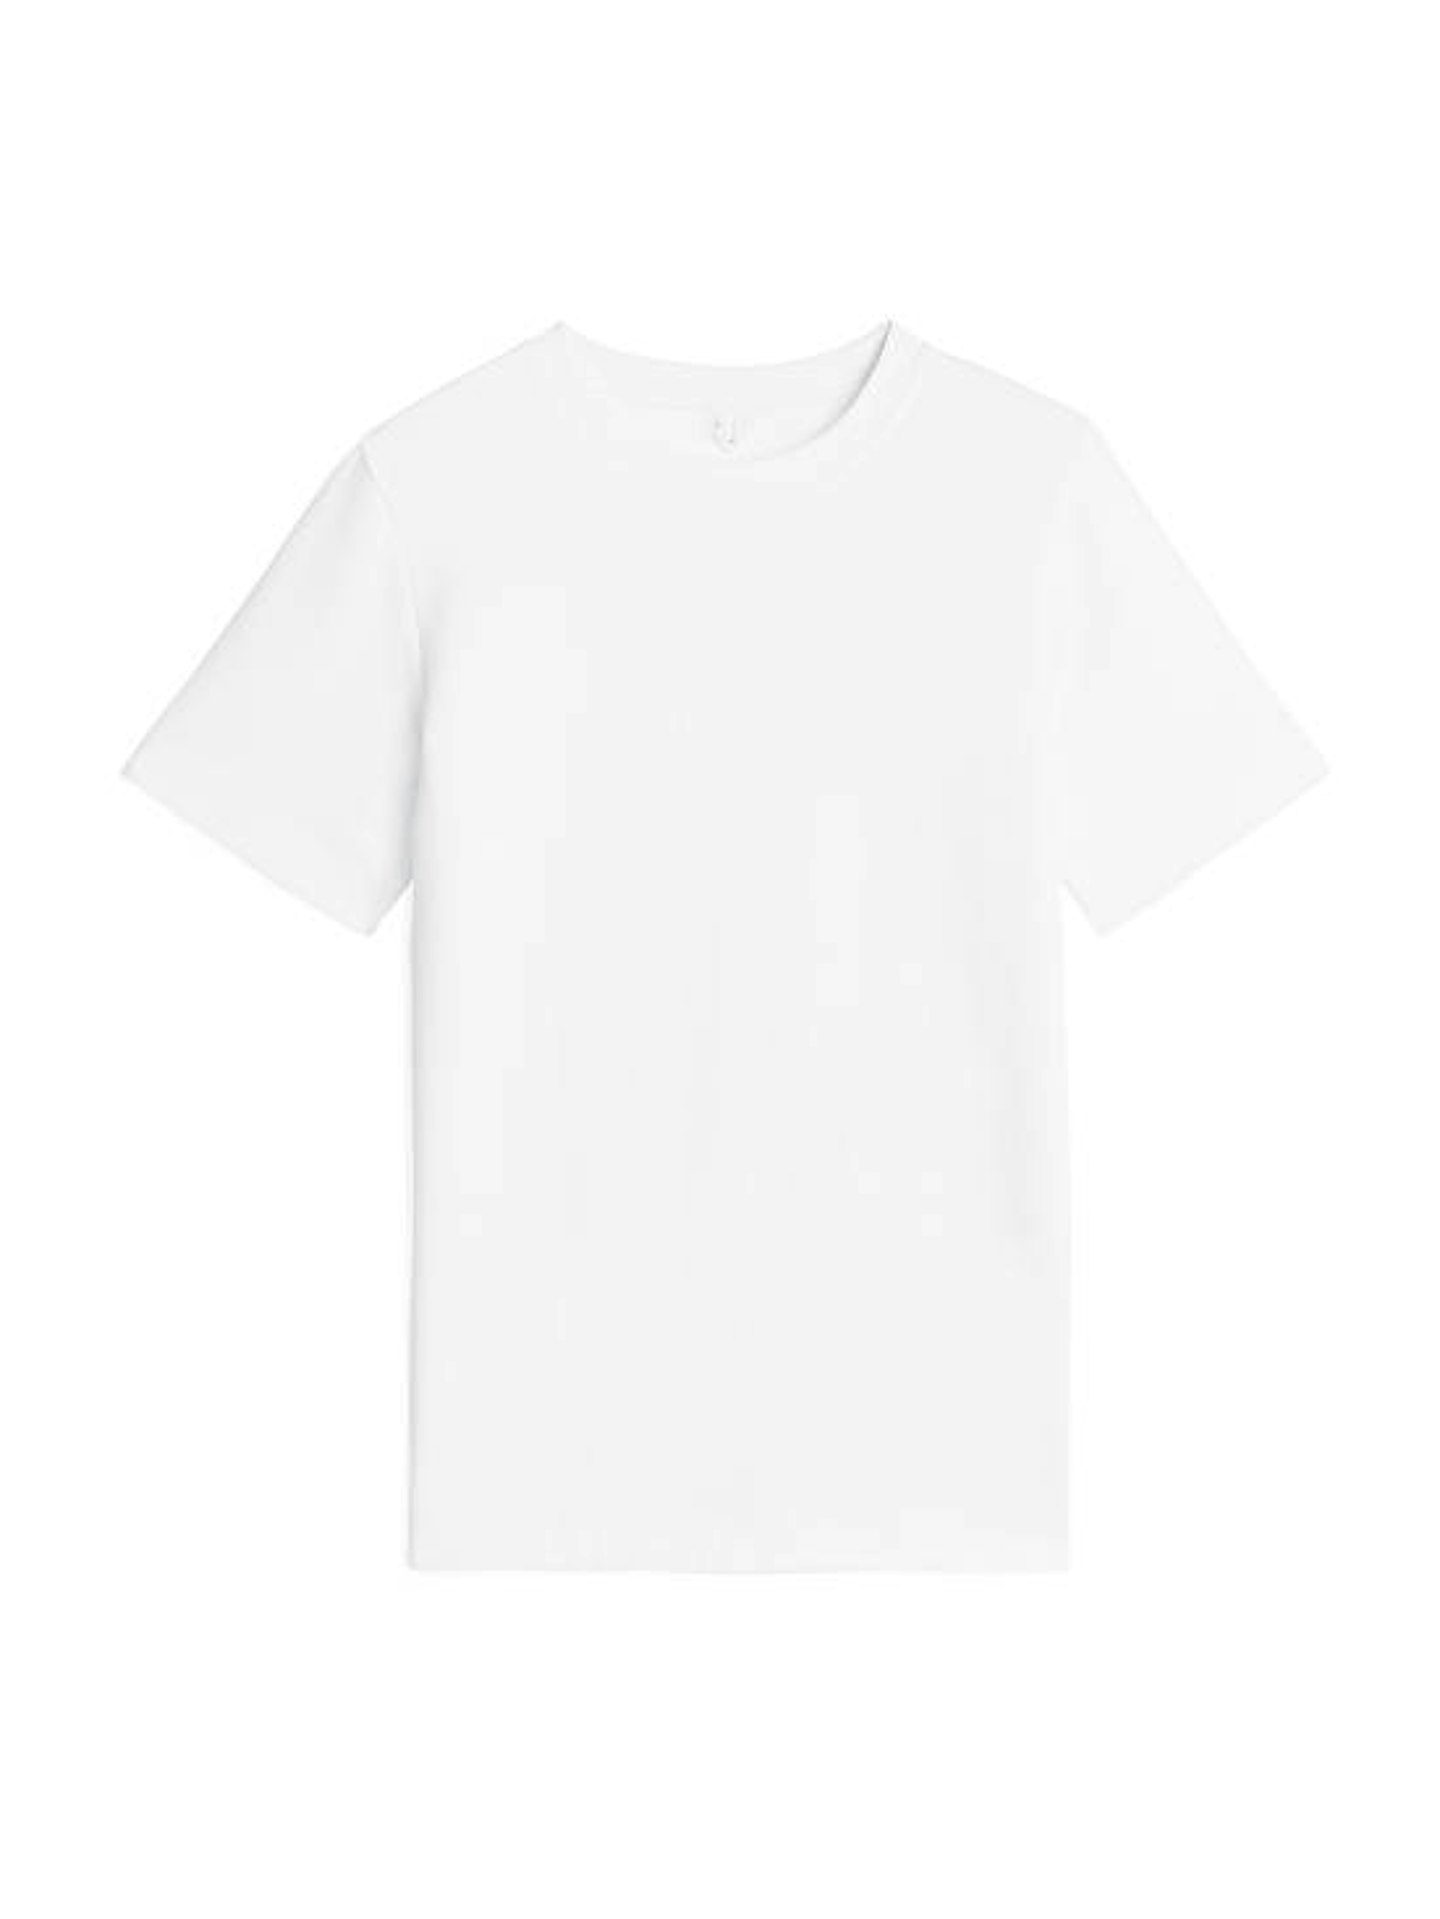 Heavy-Weight T-shirt, £35, Arket